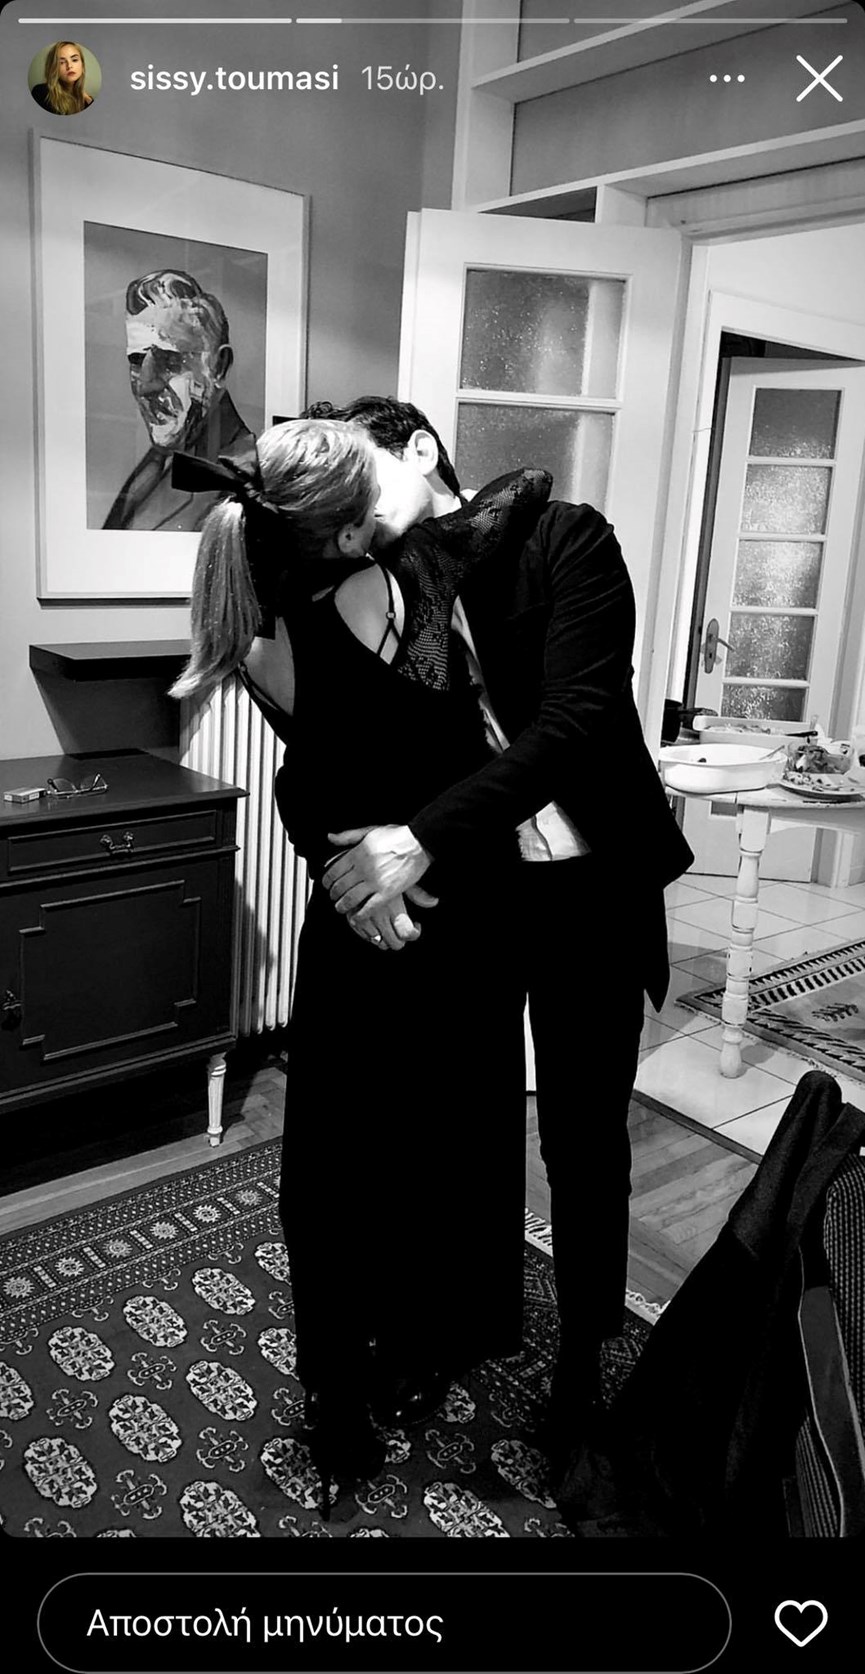 Αργύρης Πανταζάρας: Η επιβεβαίωση της σχέσης του με ηθοποιό έγινε με ένα καυτό φιλί! (εικόνα)